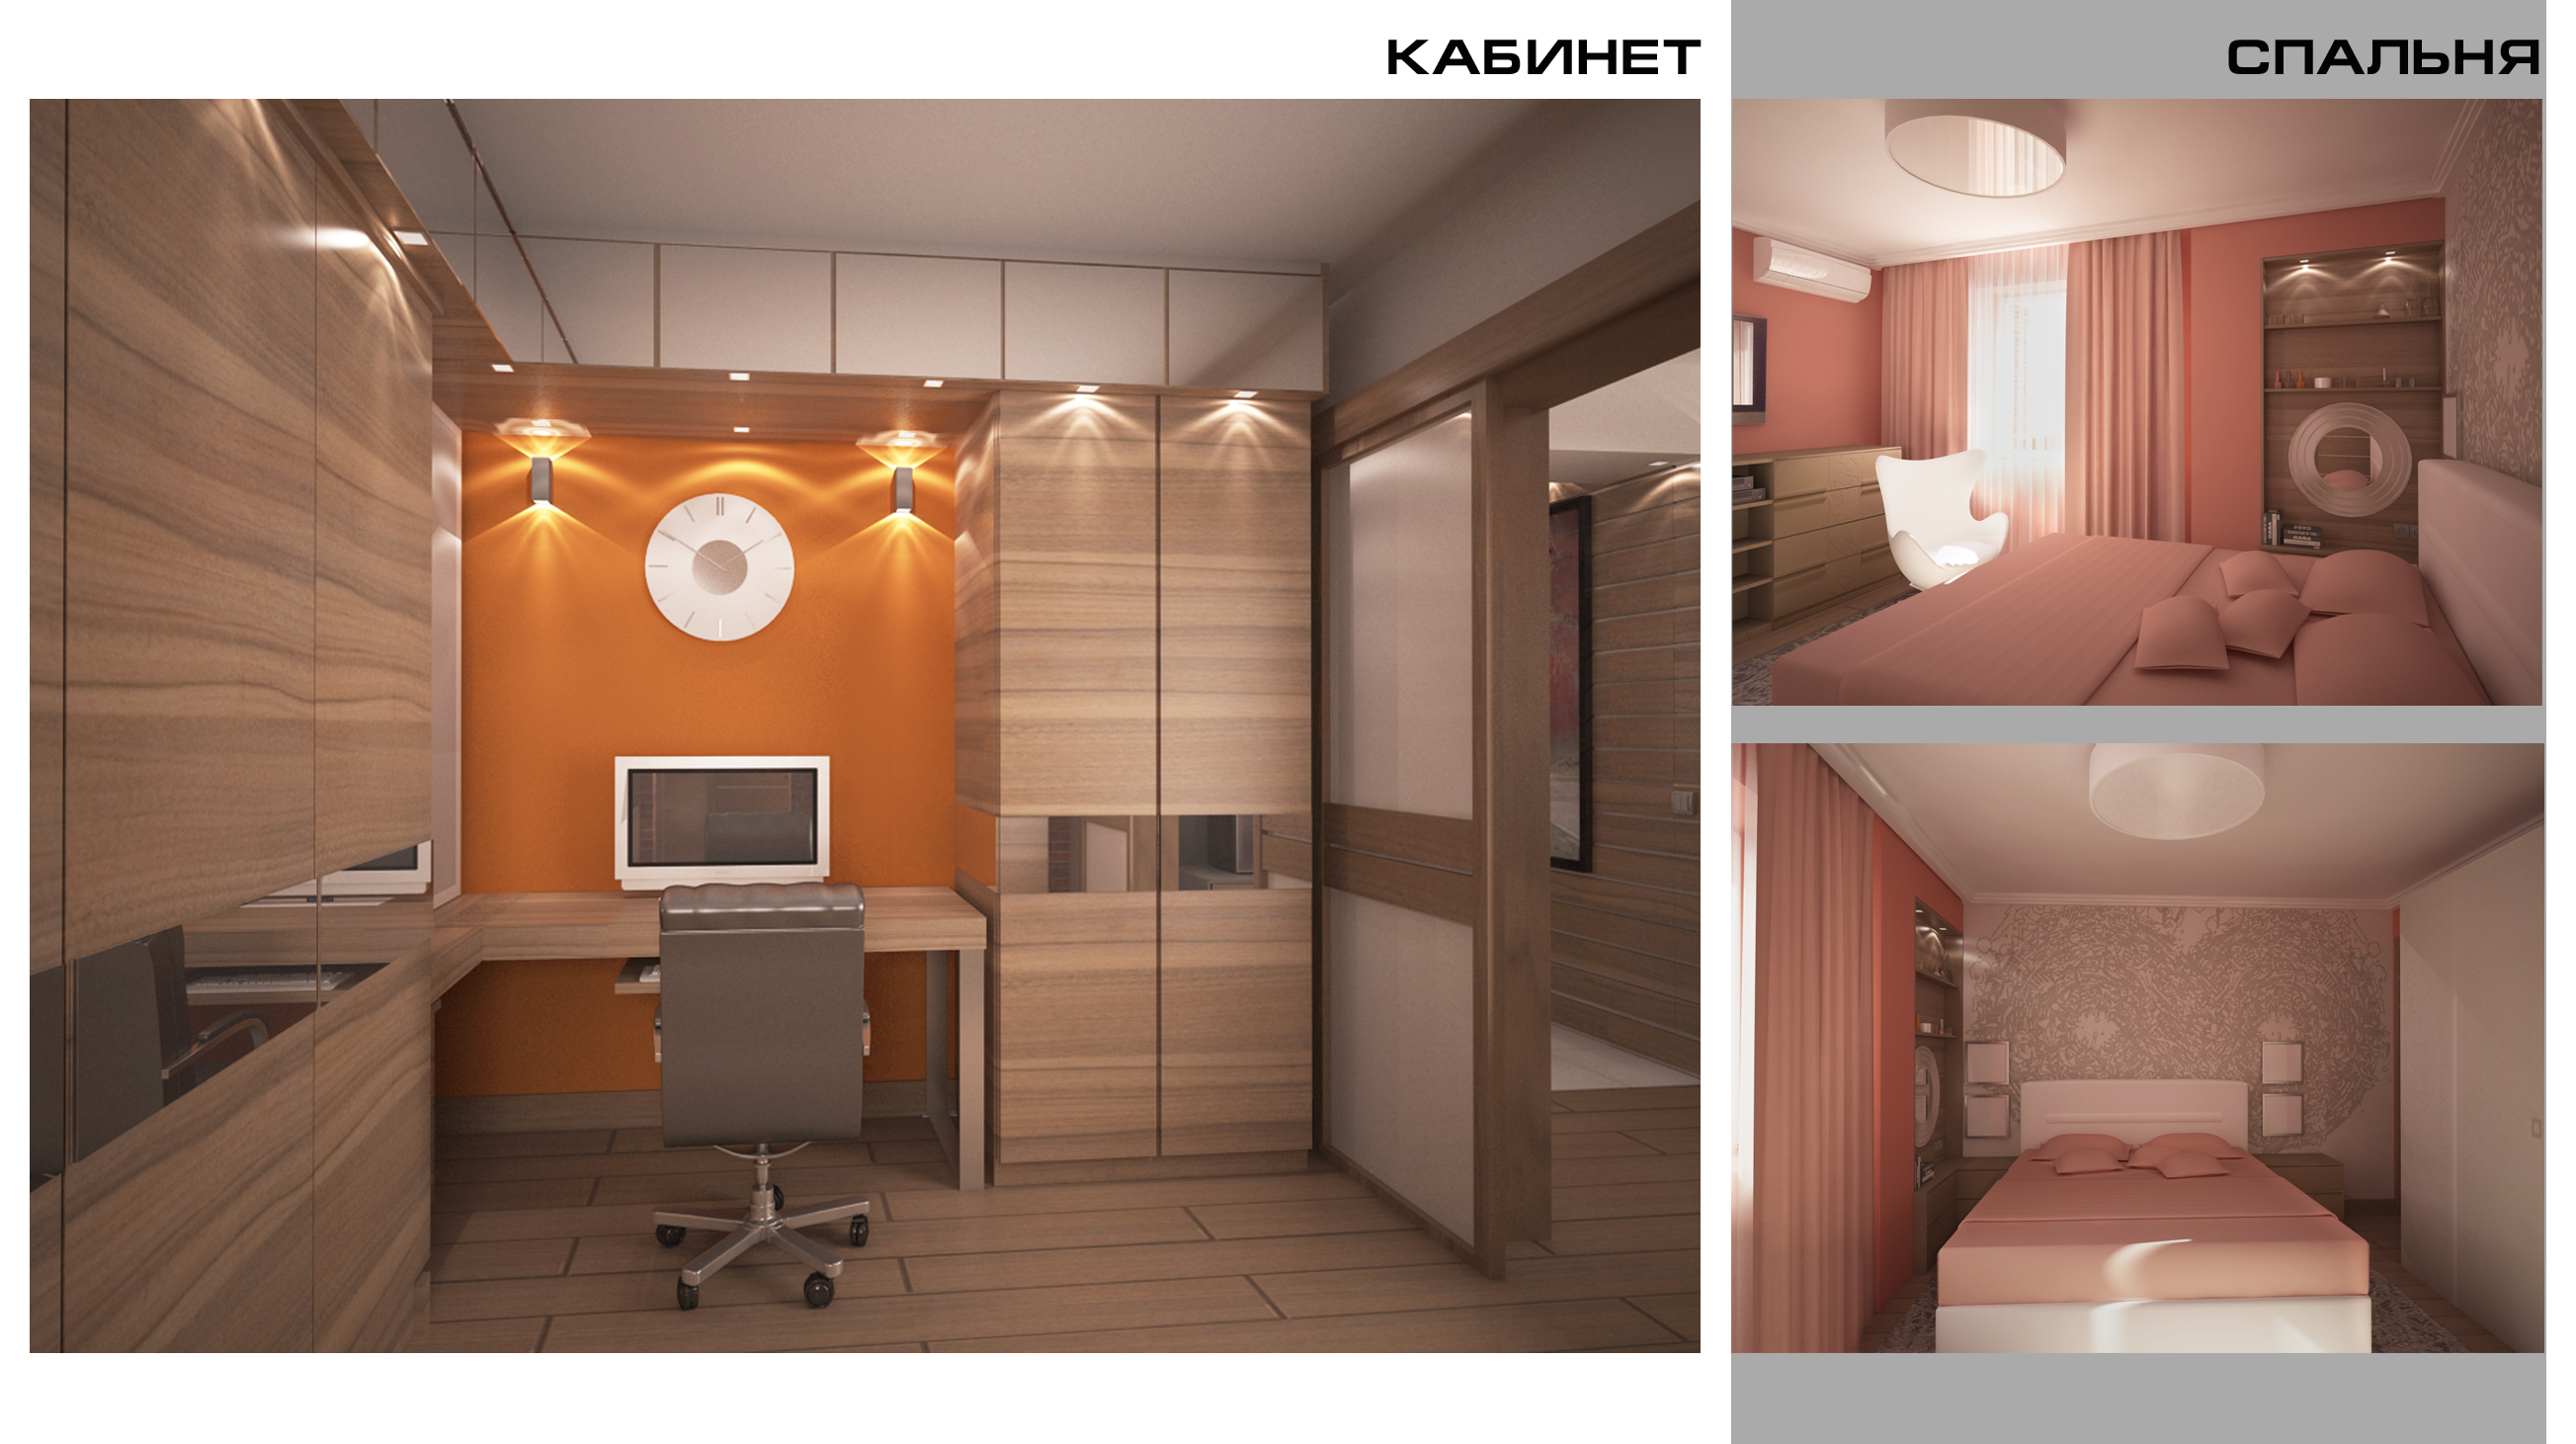 Дизайн-проект квартиры 83,5 м.кв., г. Реутов, 2013 г.